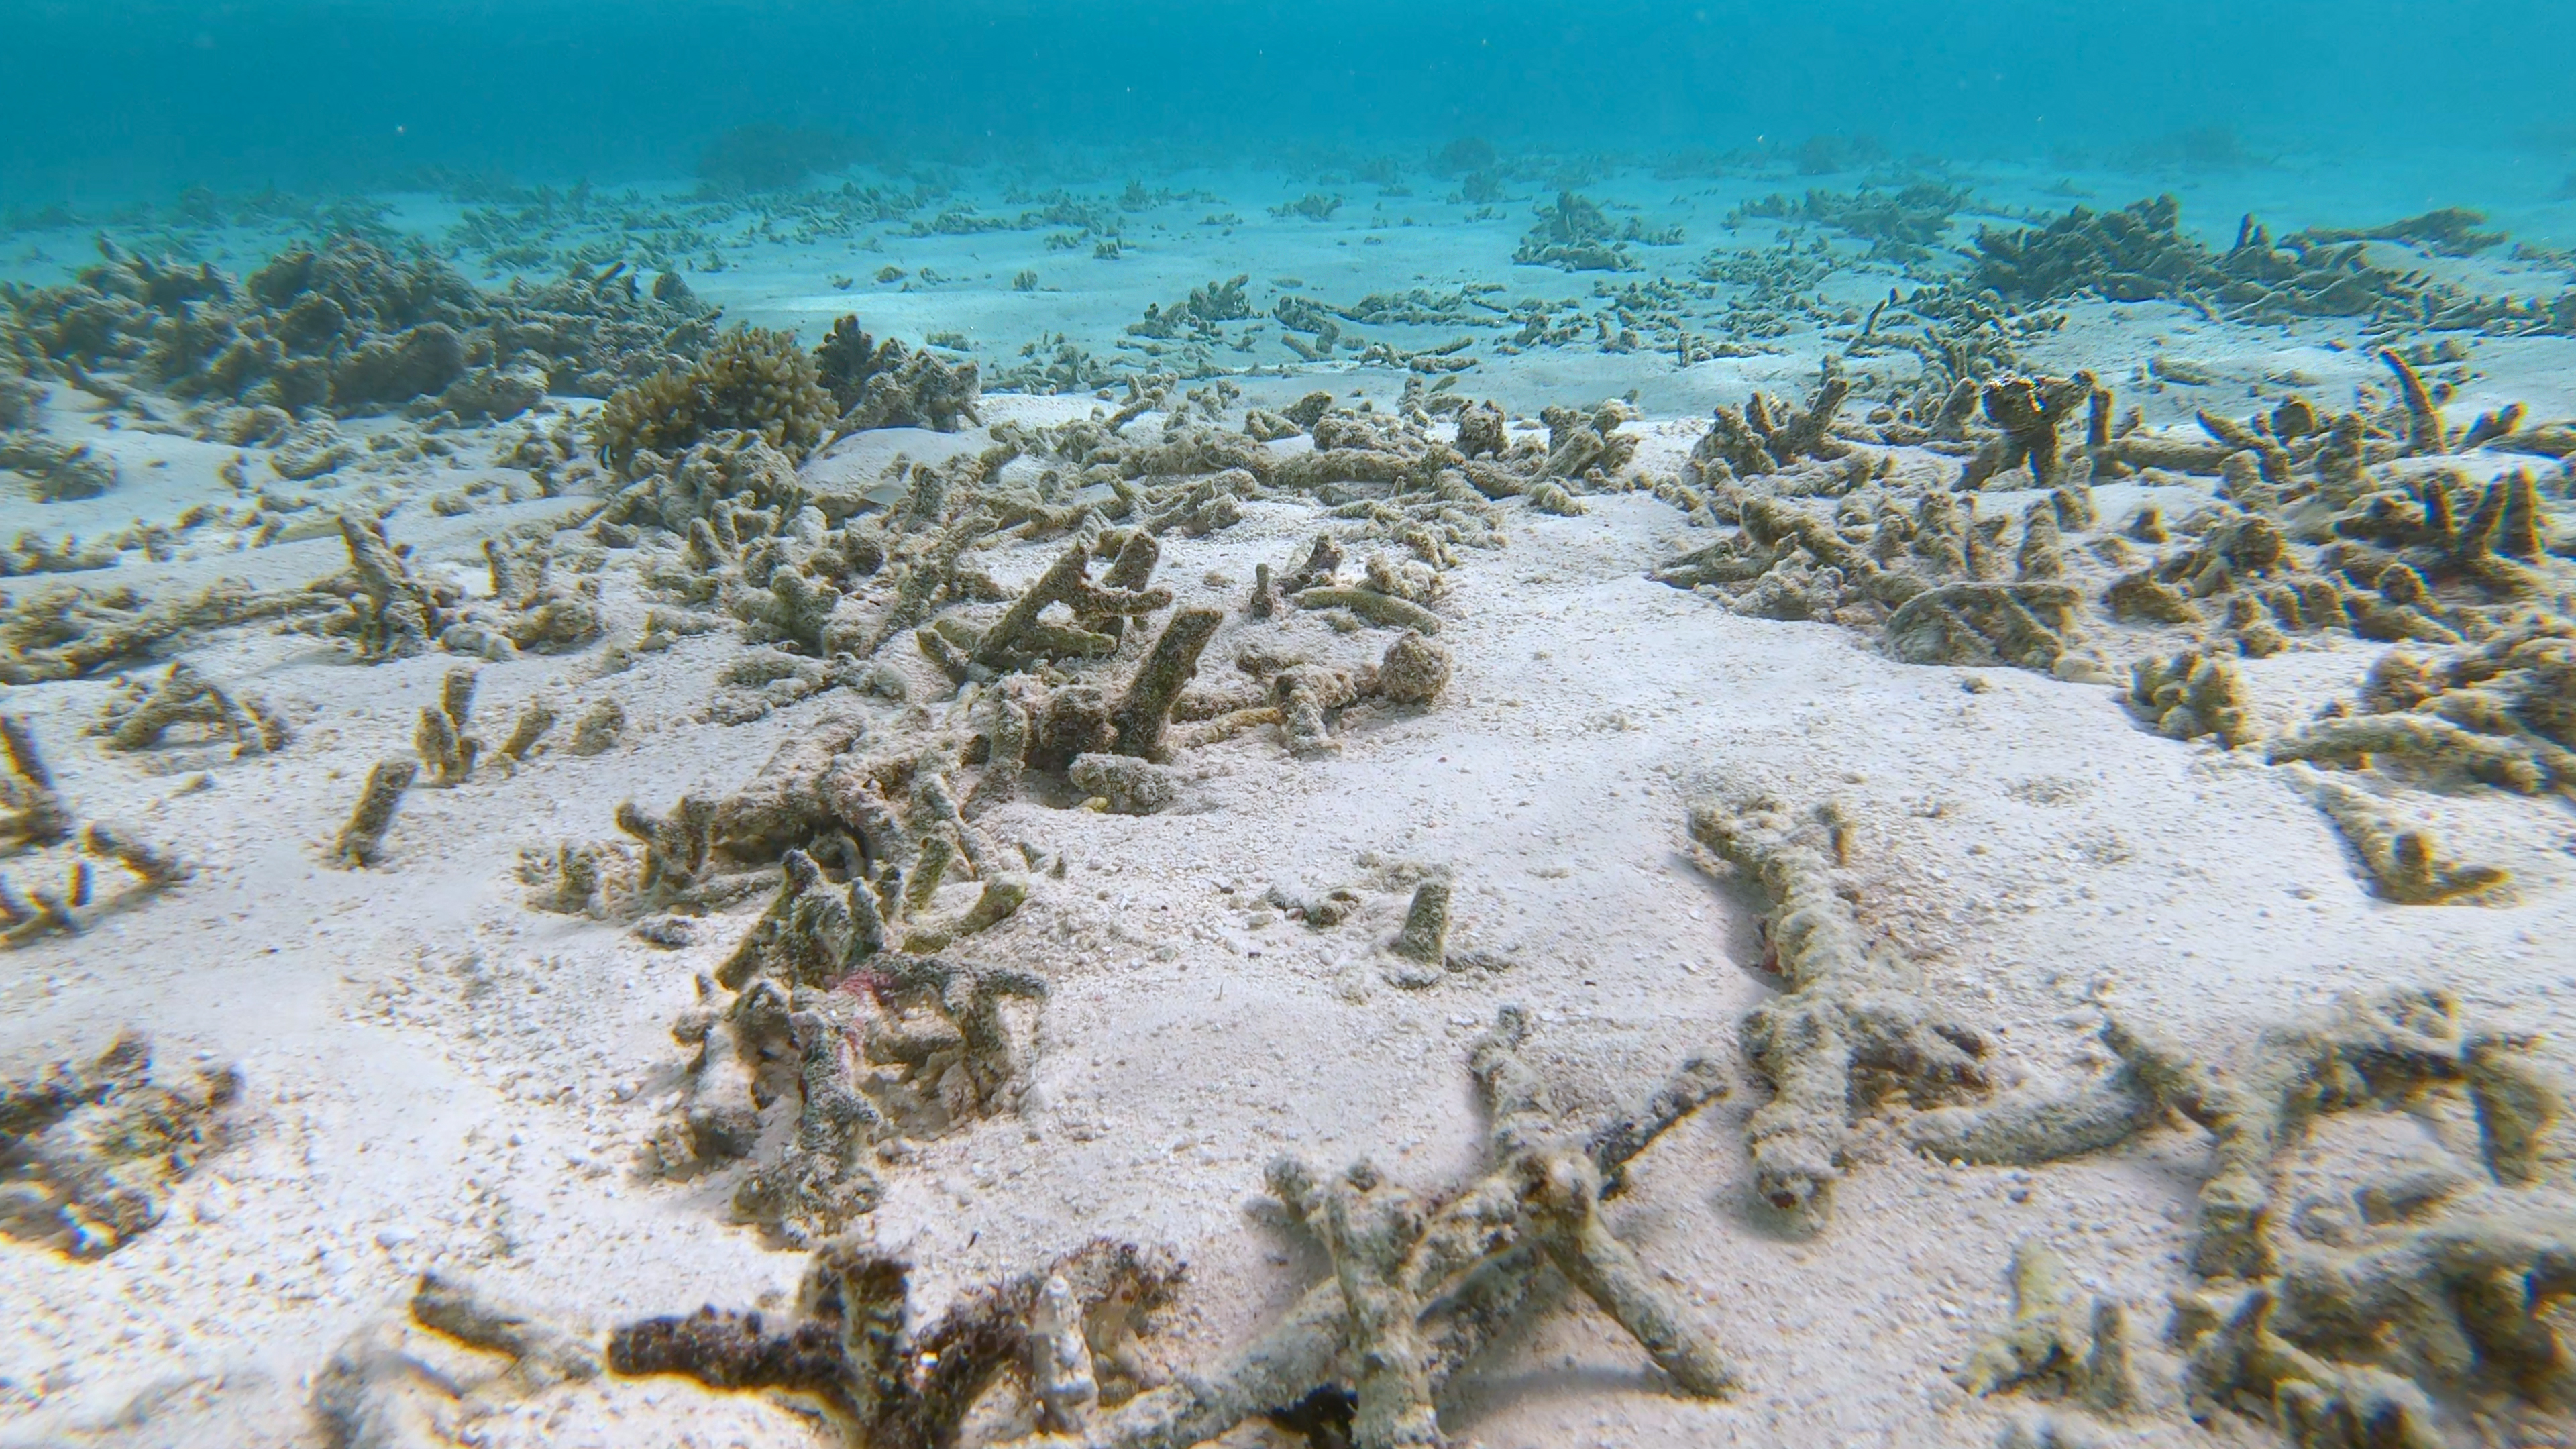     Les coraux d’Outre-mer menacés par des substances chimiques

